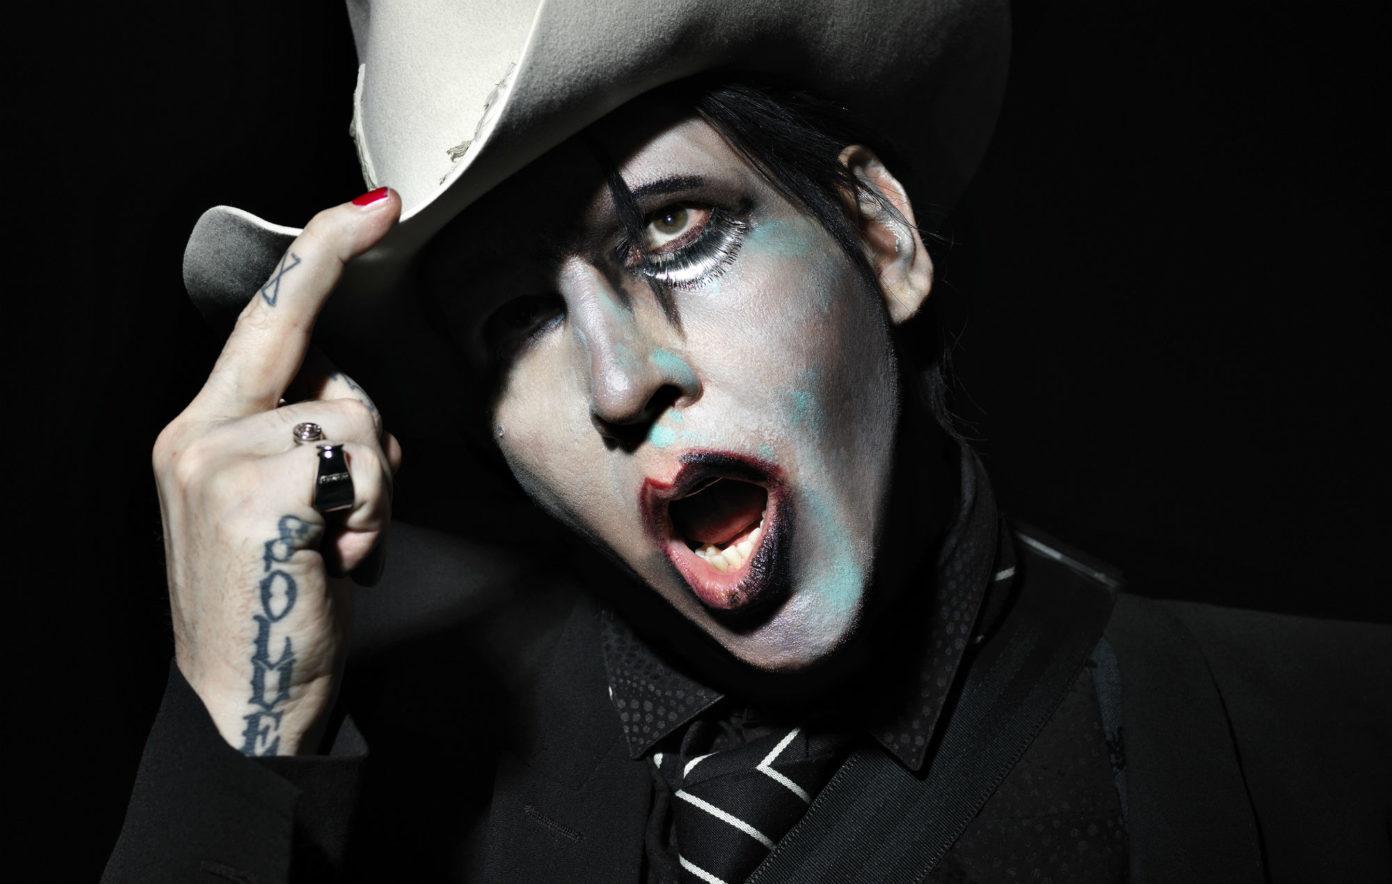 Elfte gången gillt för mannen, myten och legenden Marilyn Manson?